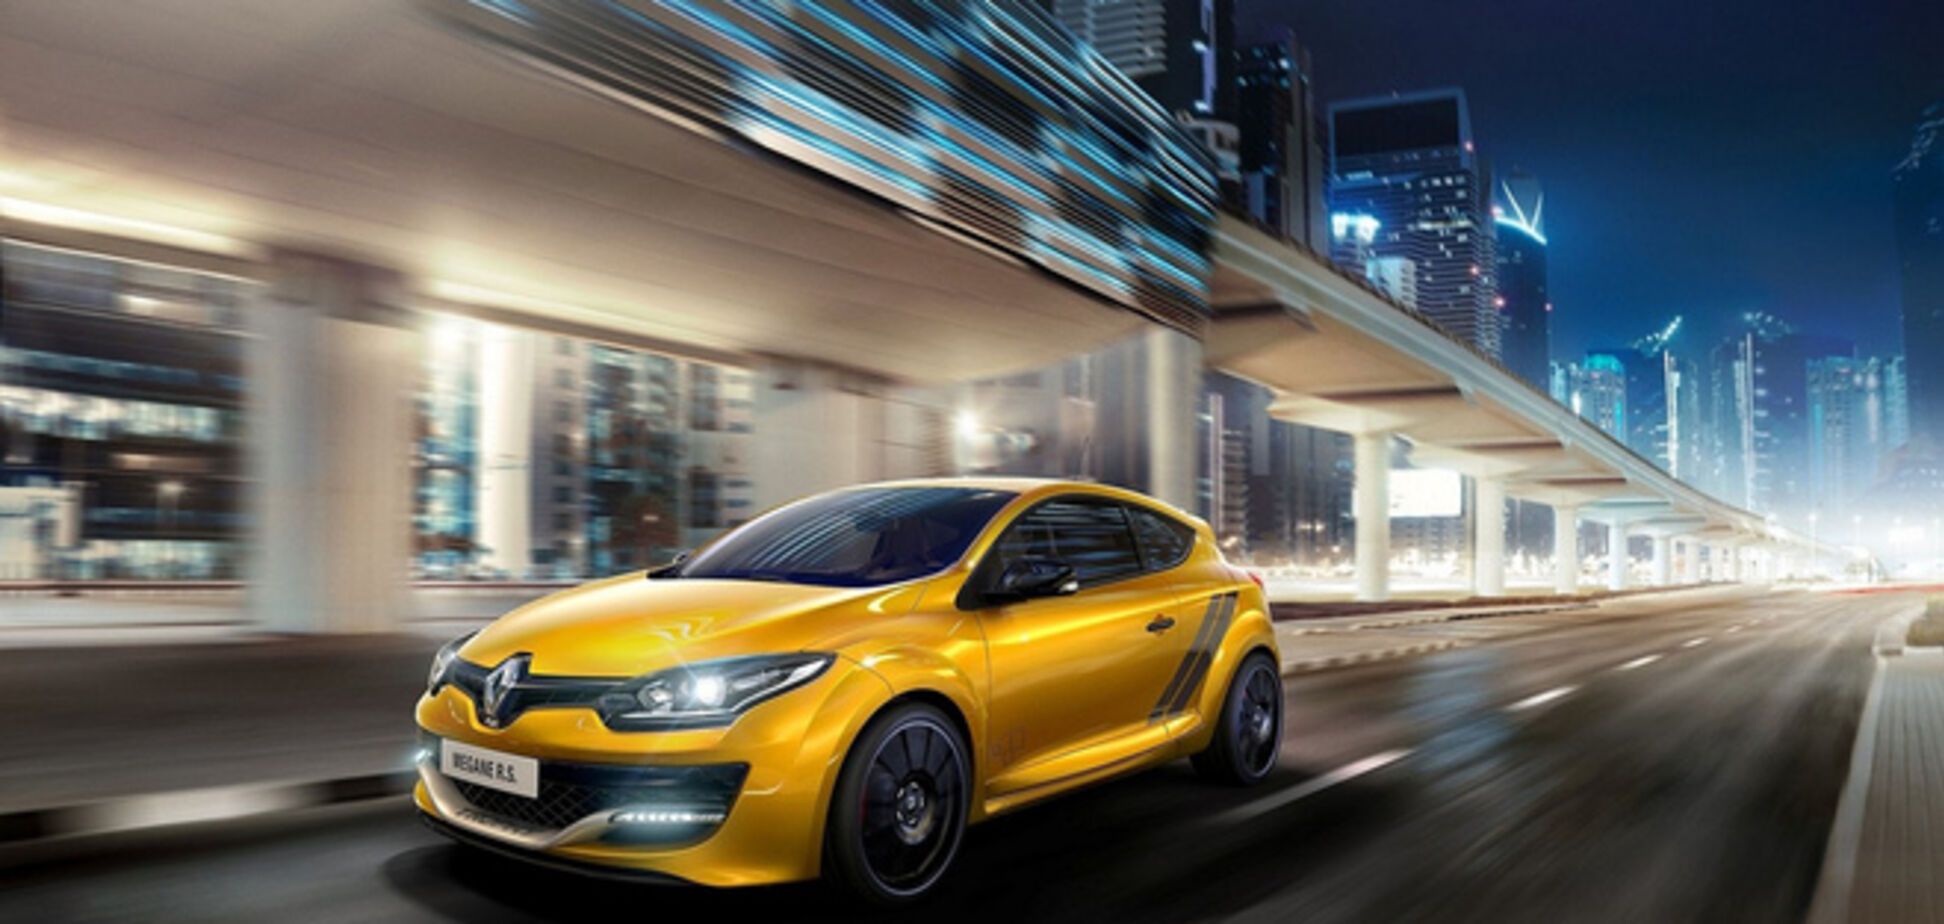 Renault представила свой самый экстремальный хэтчбек